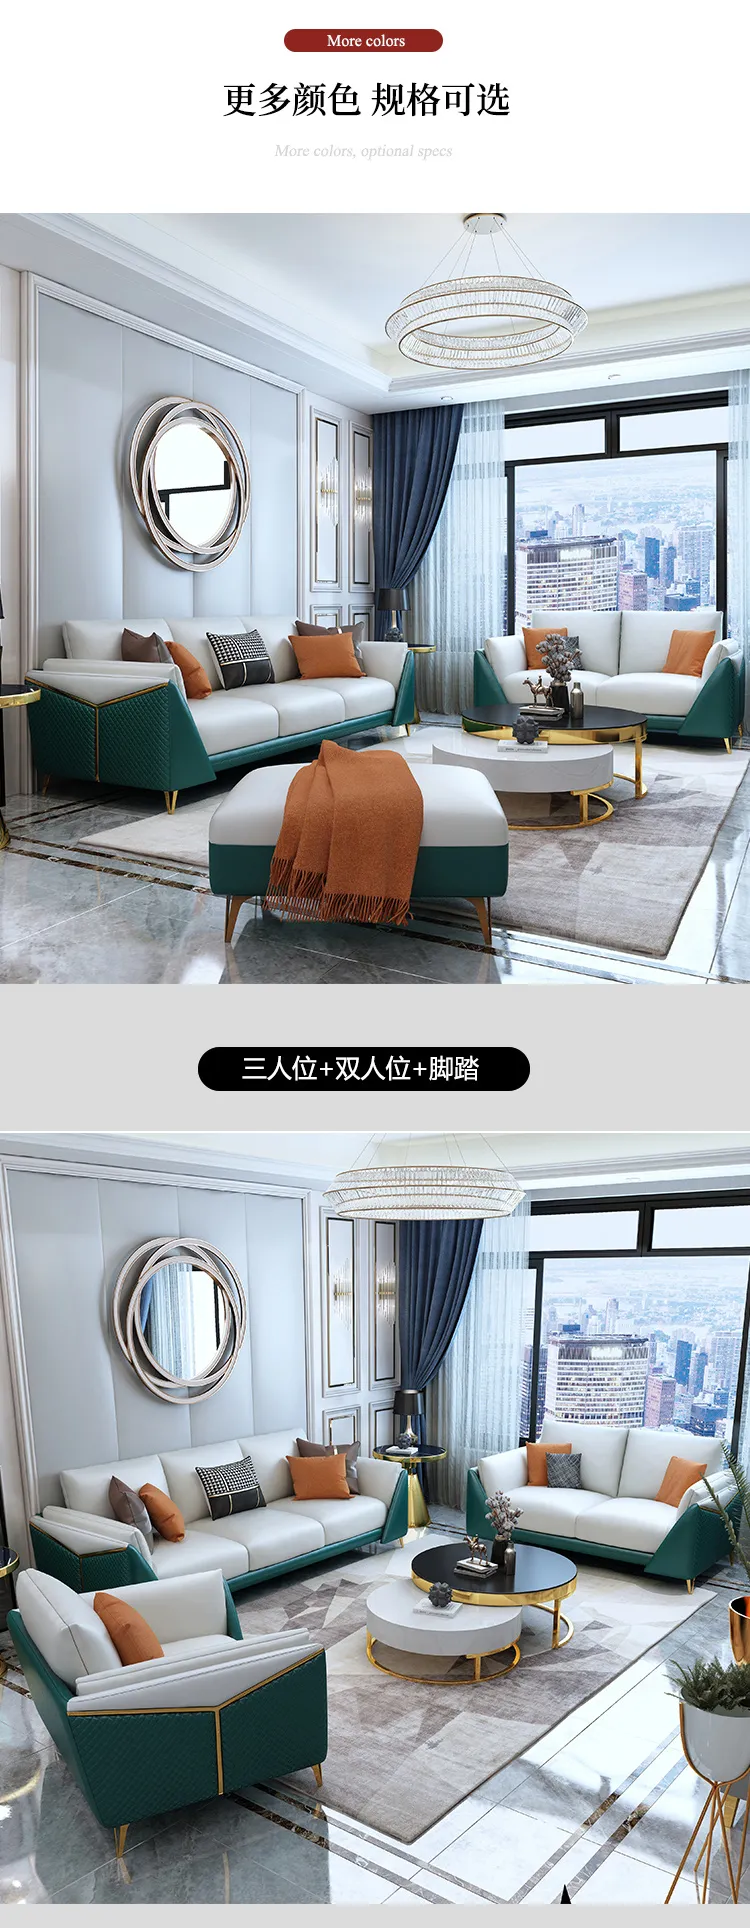 华松居 意式极简轻奢沙发现代简约客厅转角沙发组合9811-22(图4)